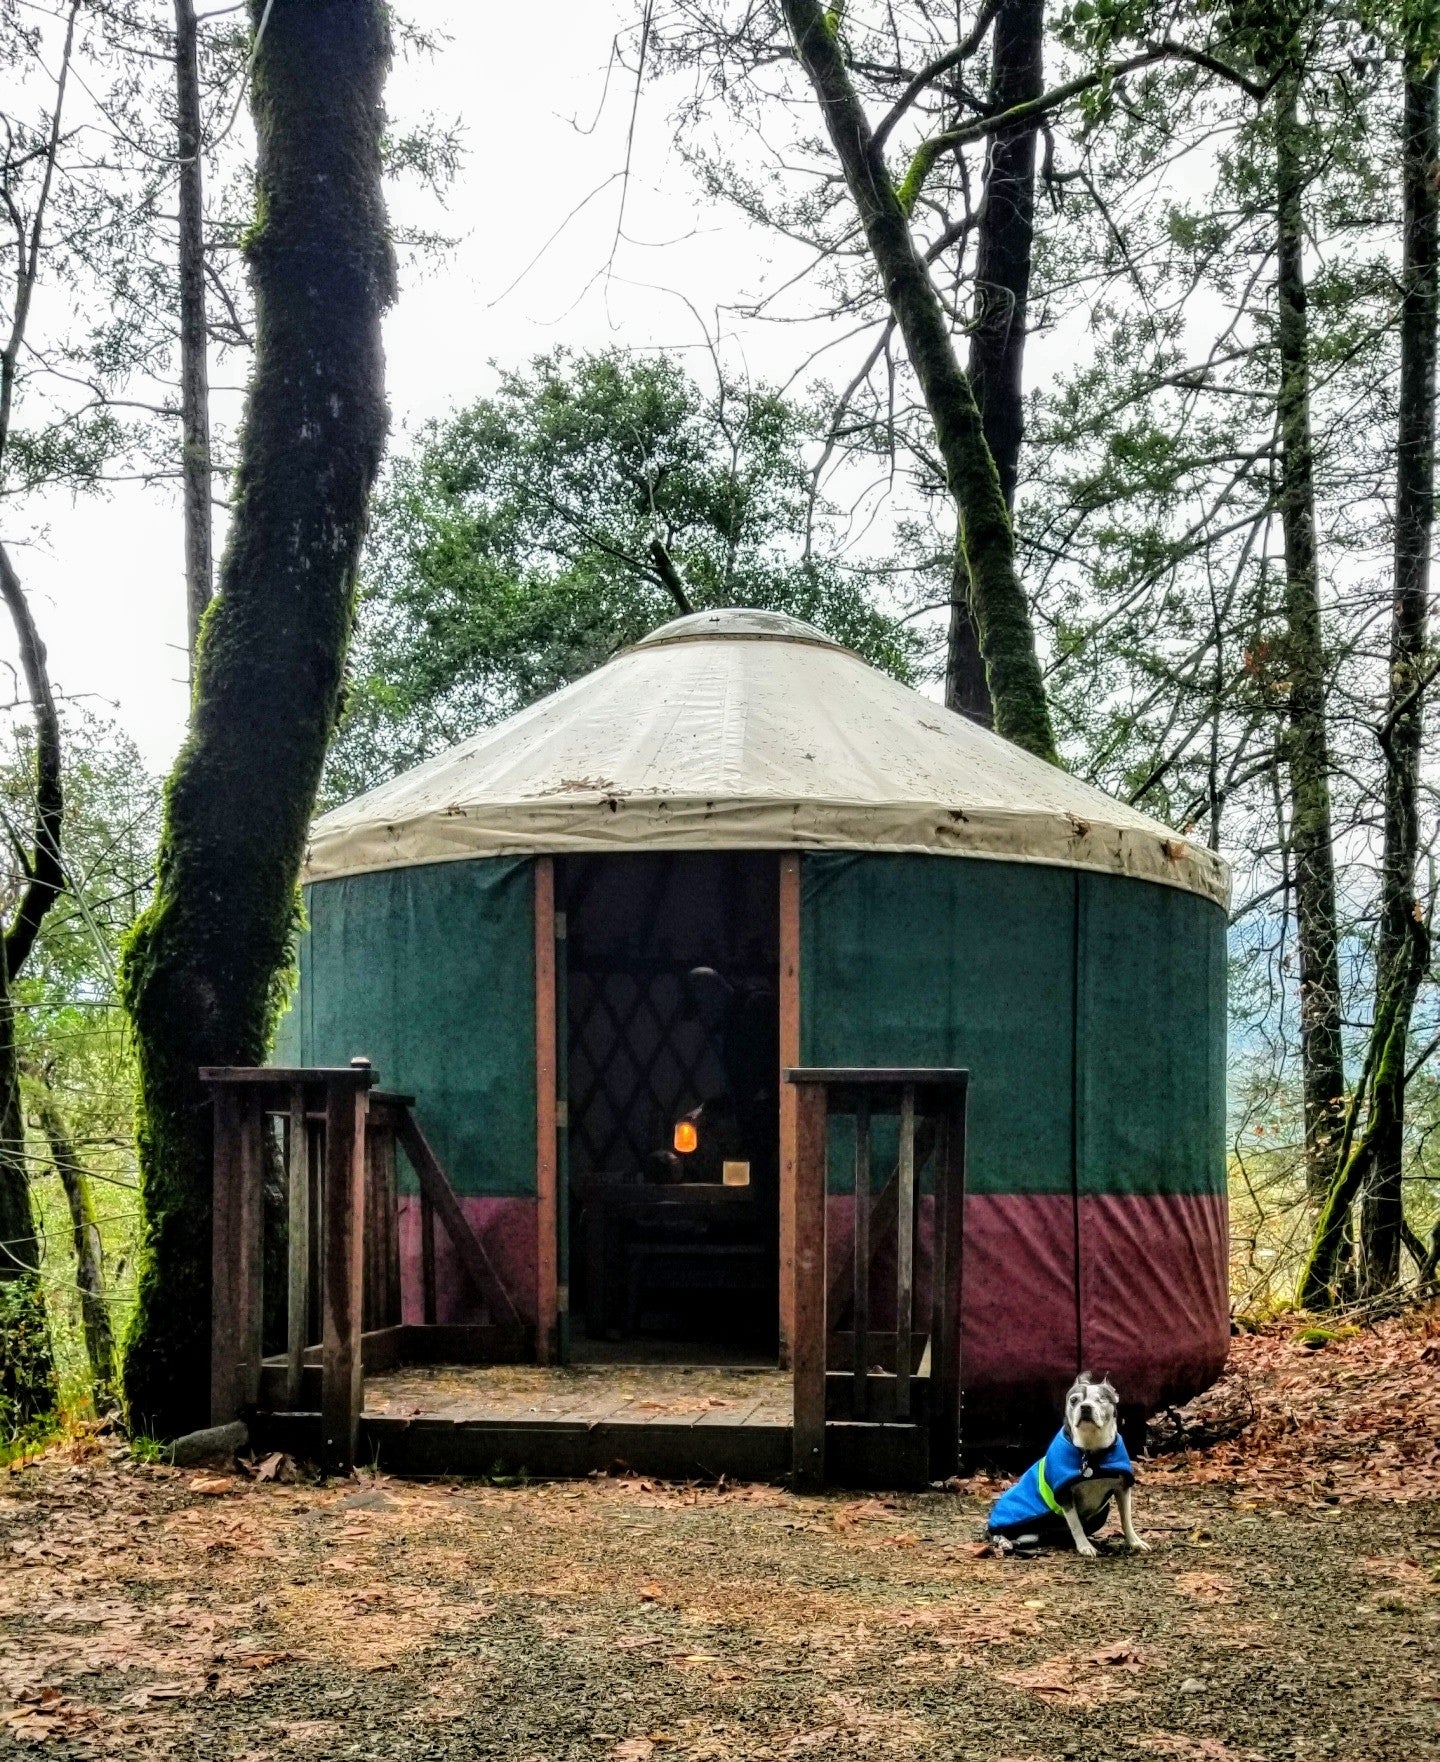 Outside the yurt